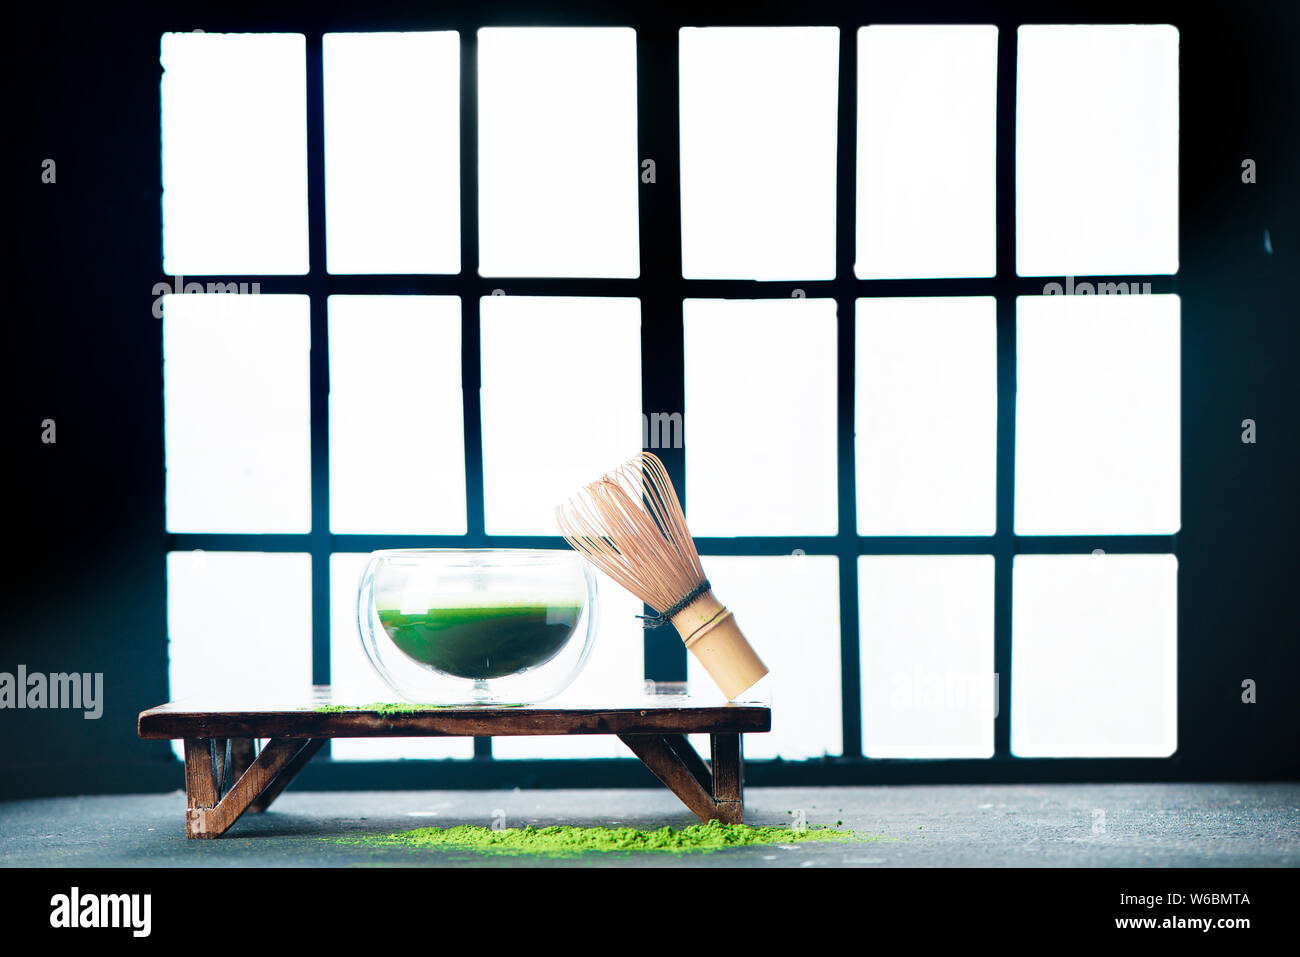 Le thé vert matcha en-tête avec portes coulissantes Shoji arrière-plan. Chambre traditionnelle japonaise, la préparation à la cérémonie du thé Banque D'Images